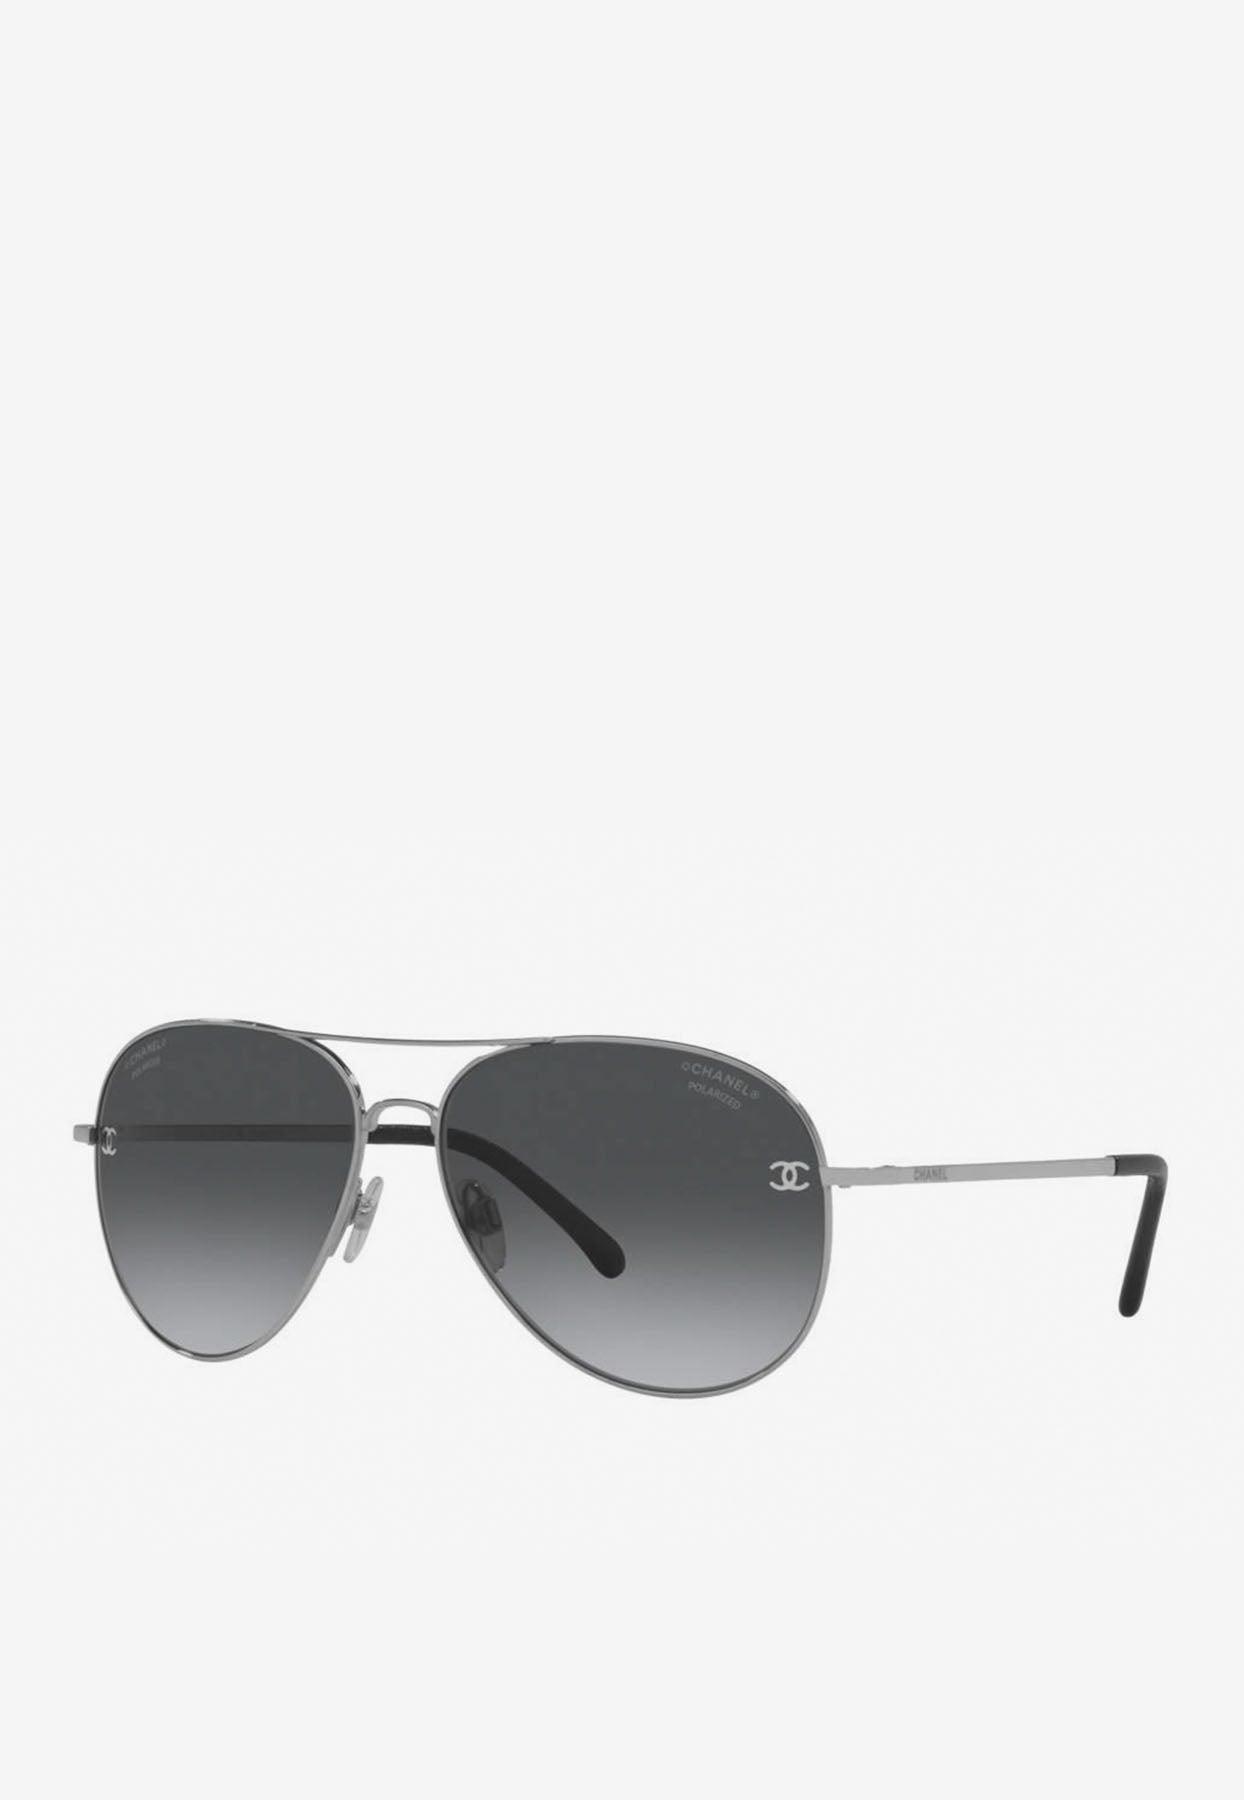 Chanel Aviator Sunglasses Gold Brown Lenses 4189